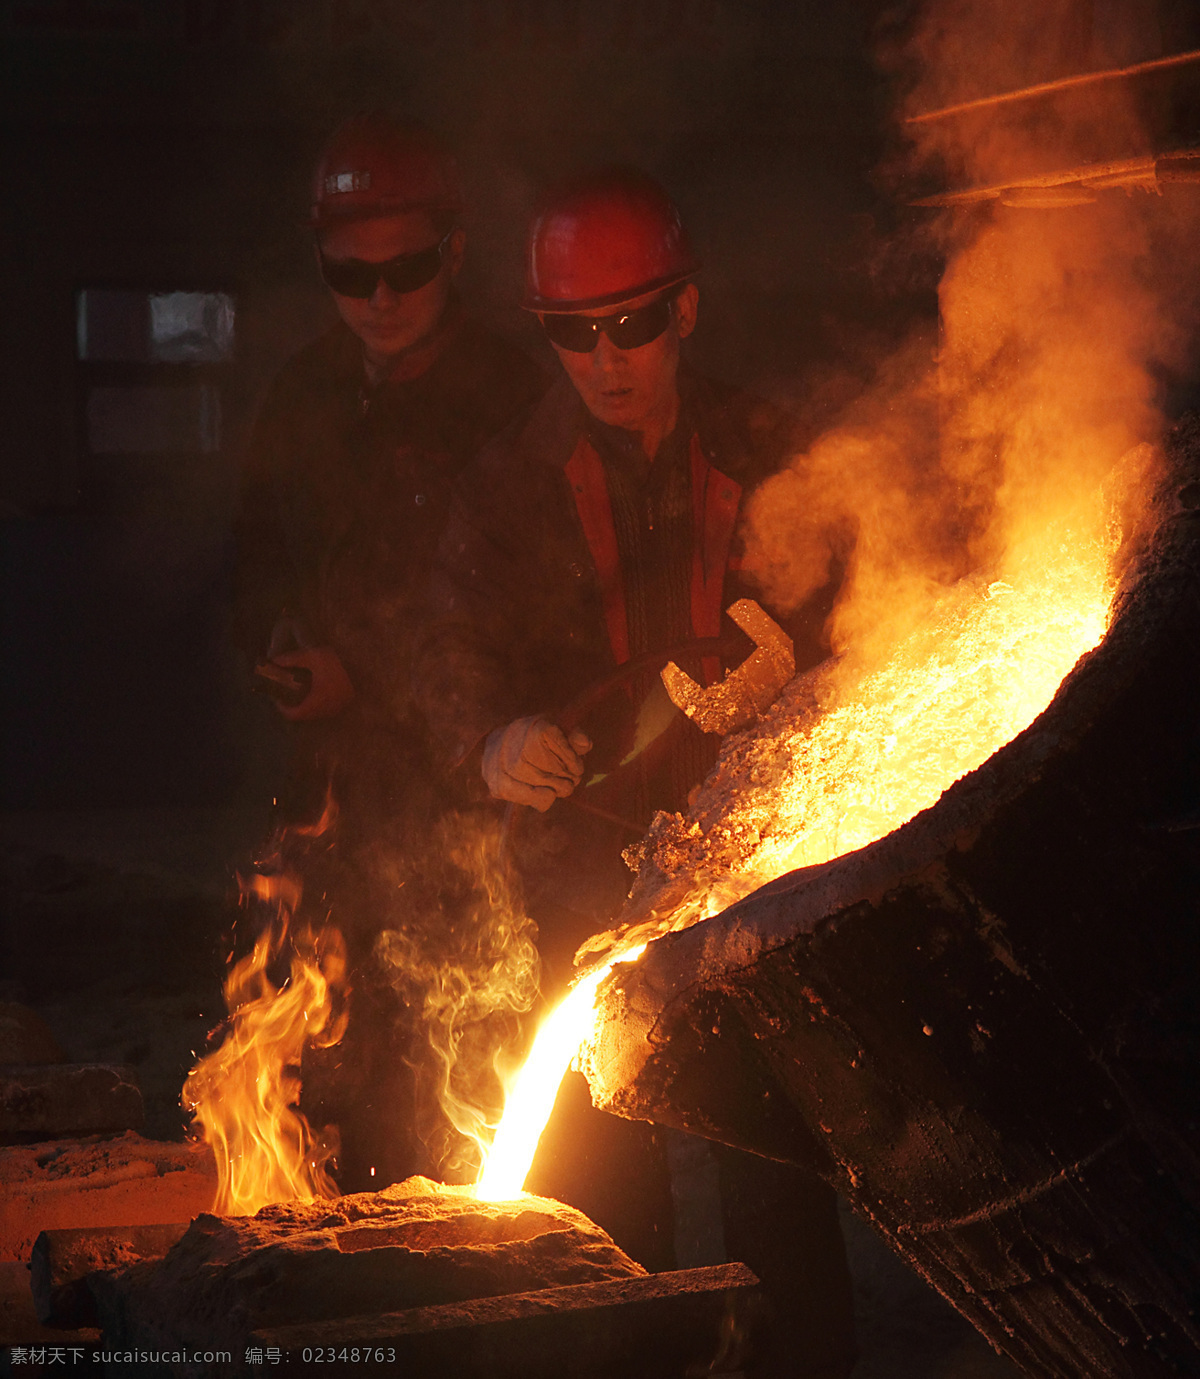 铸造工人 工人 钢包 钢水 火光 烟雾 工业题材摄影 职业人物 人物图库